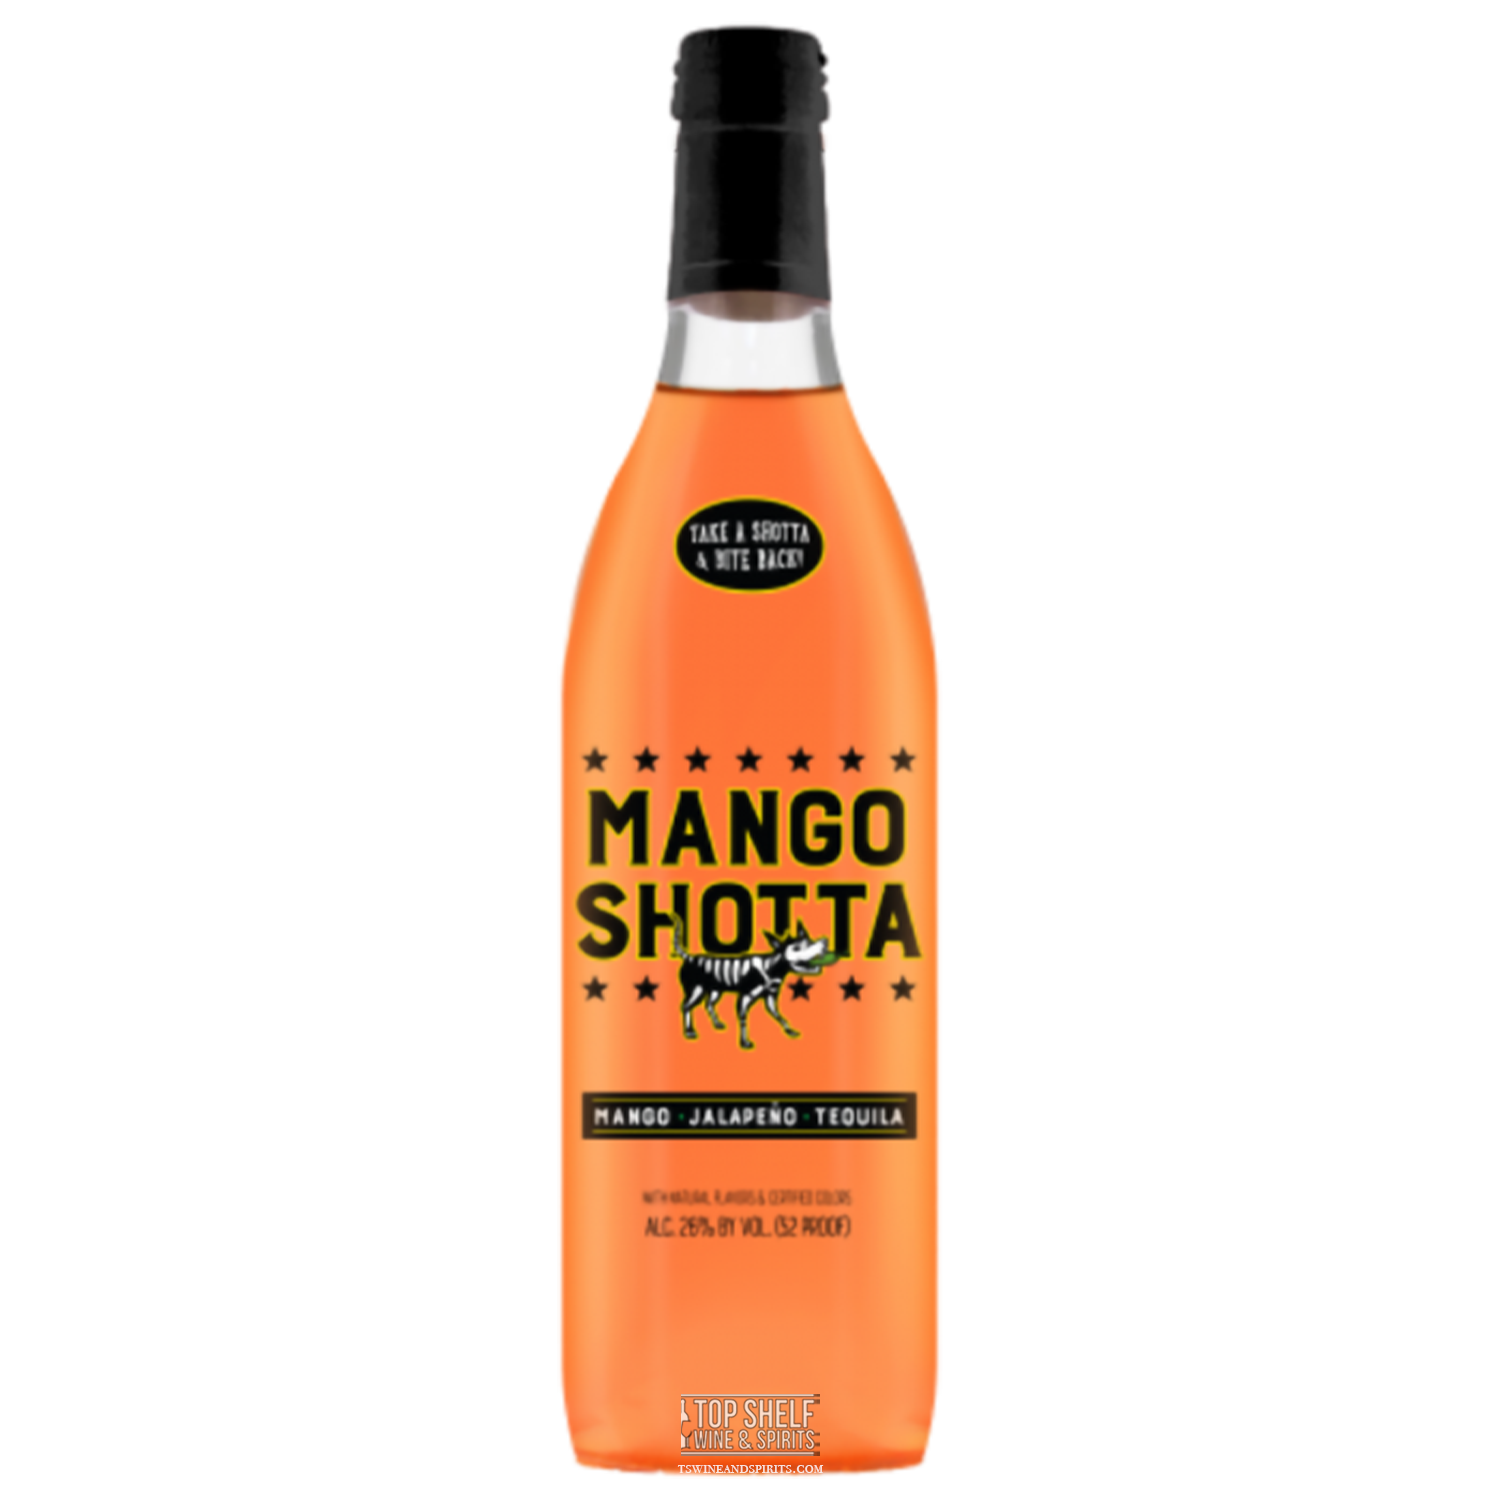 Mango Shotta Mango Jalapeño Tequila